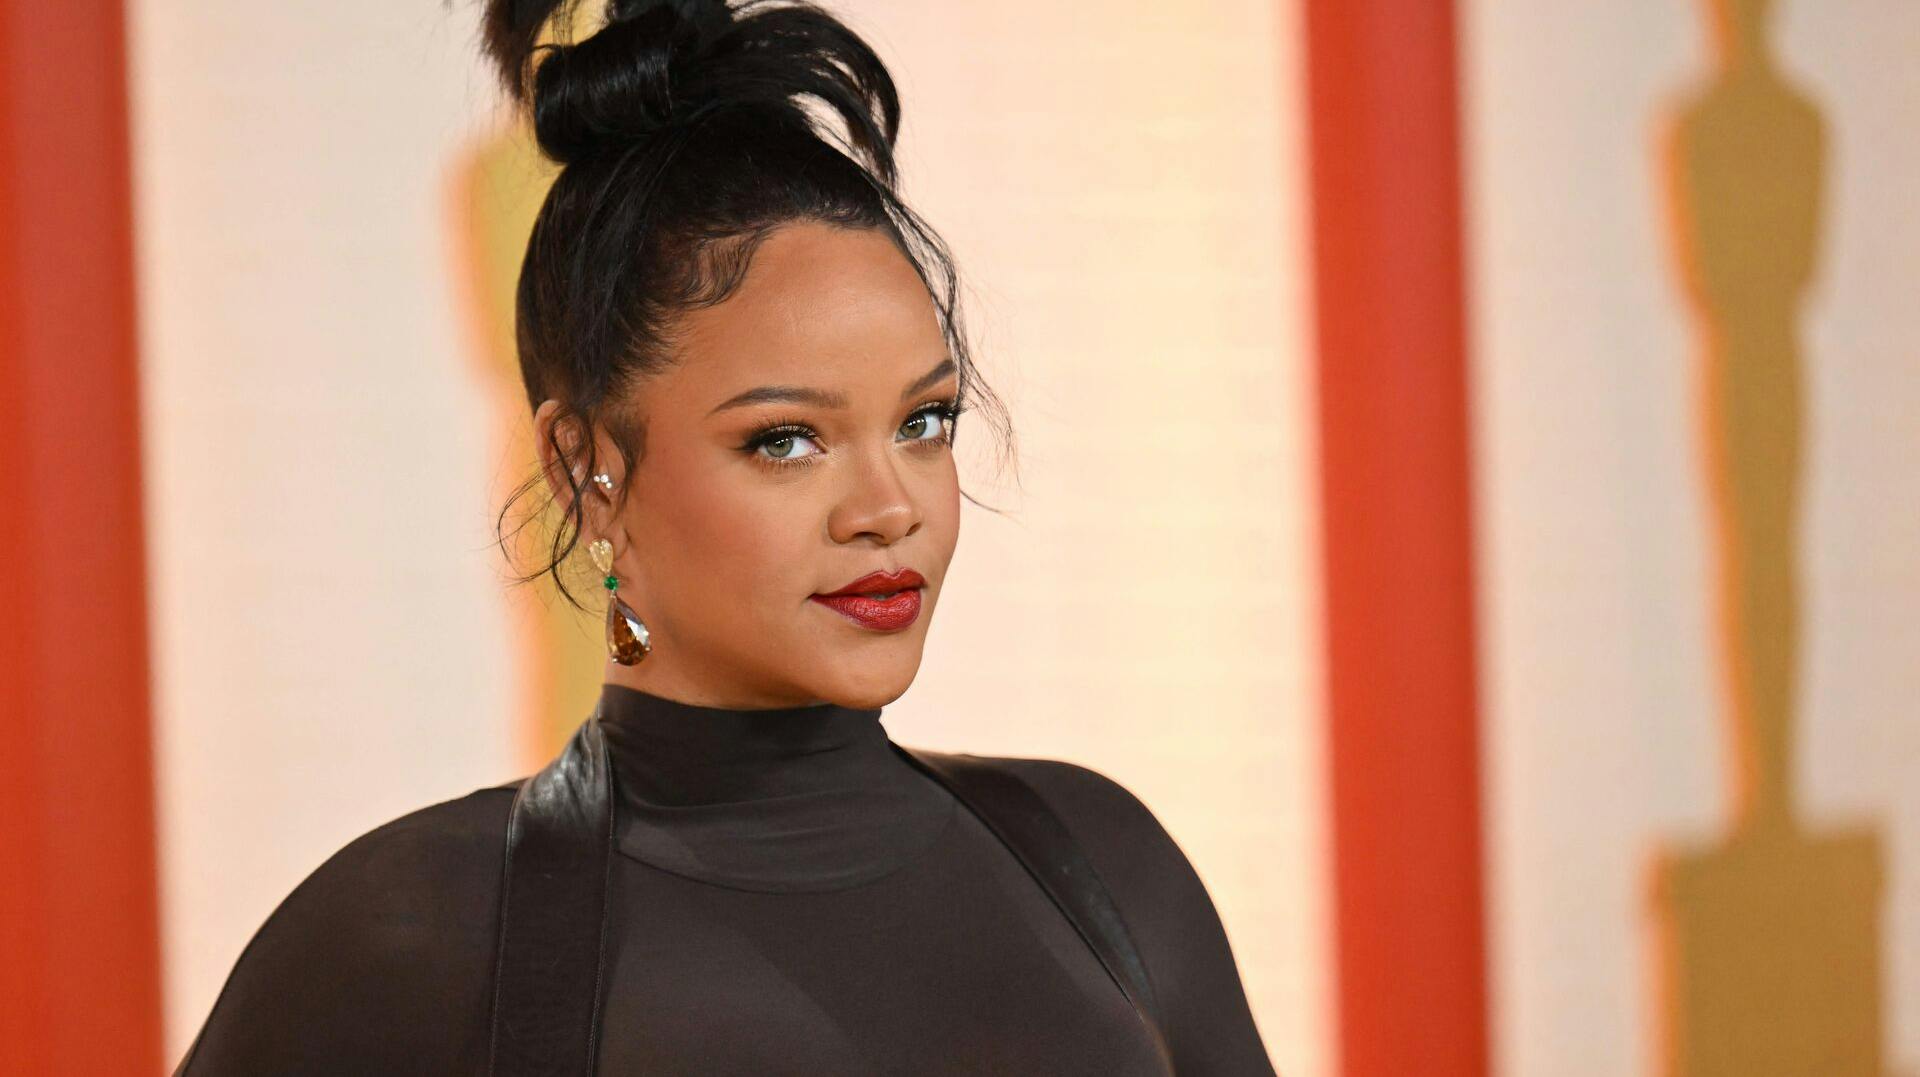 Rihannas formue bliver vurderet til at være omkring 1,4 milliarder dollar. Det er i omegnen af 10 milliarder kroner.